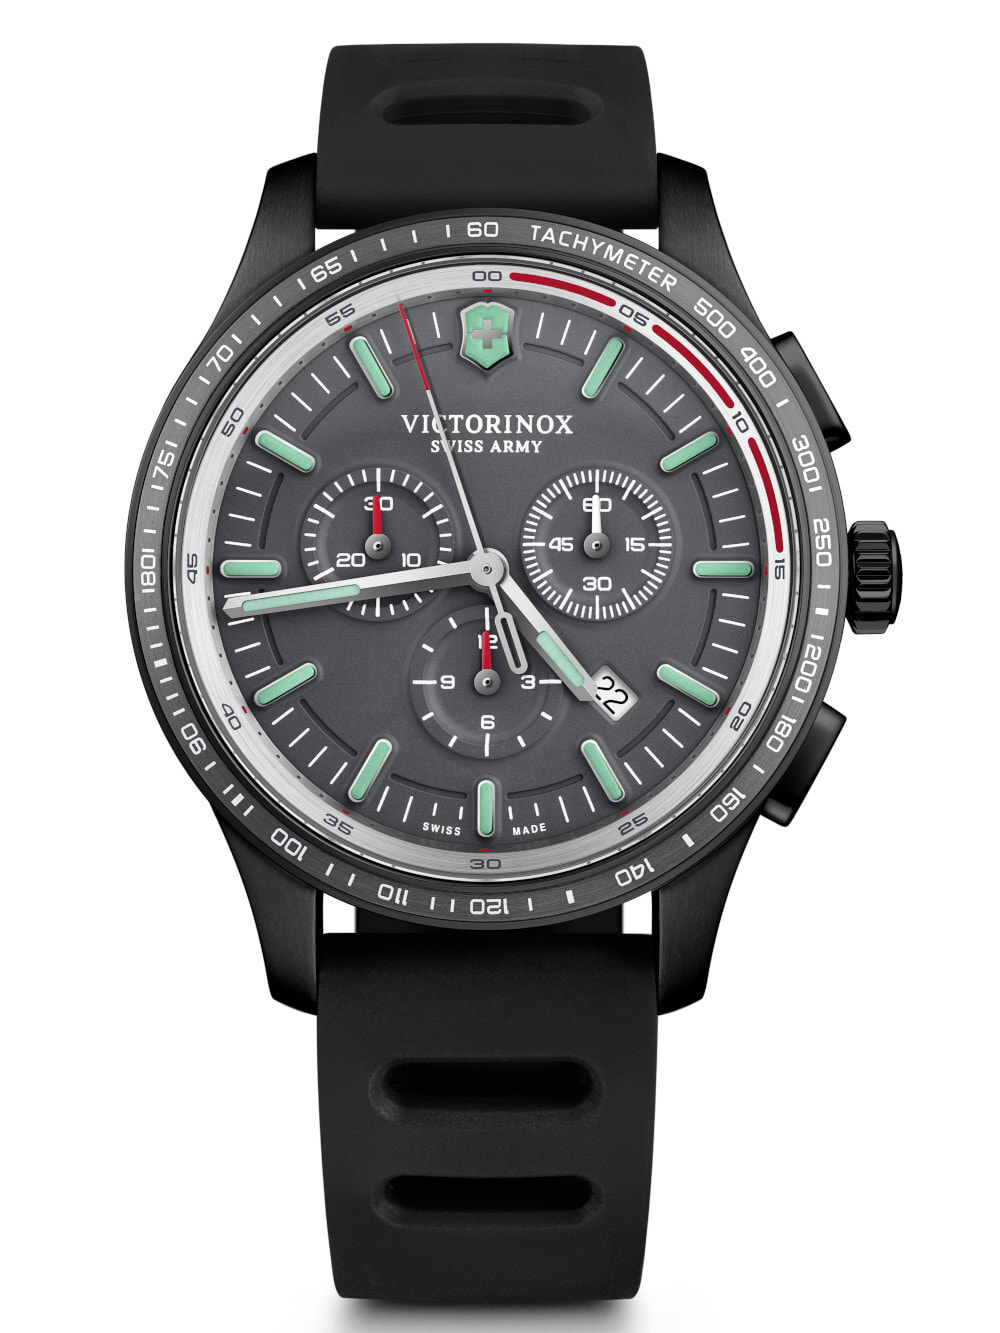 Мужские часы наручные с черным силиконовым ремешком Victorinox 241818 Alliance Sport Chronograph 44mm 10ATM